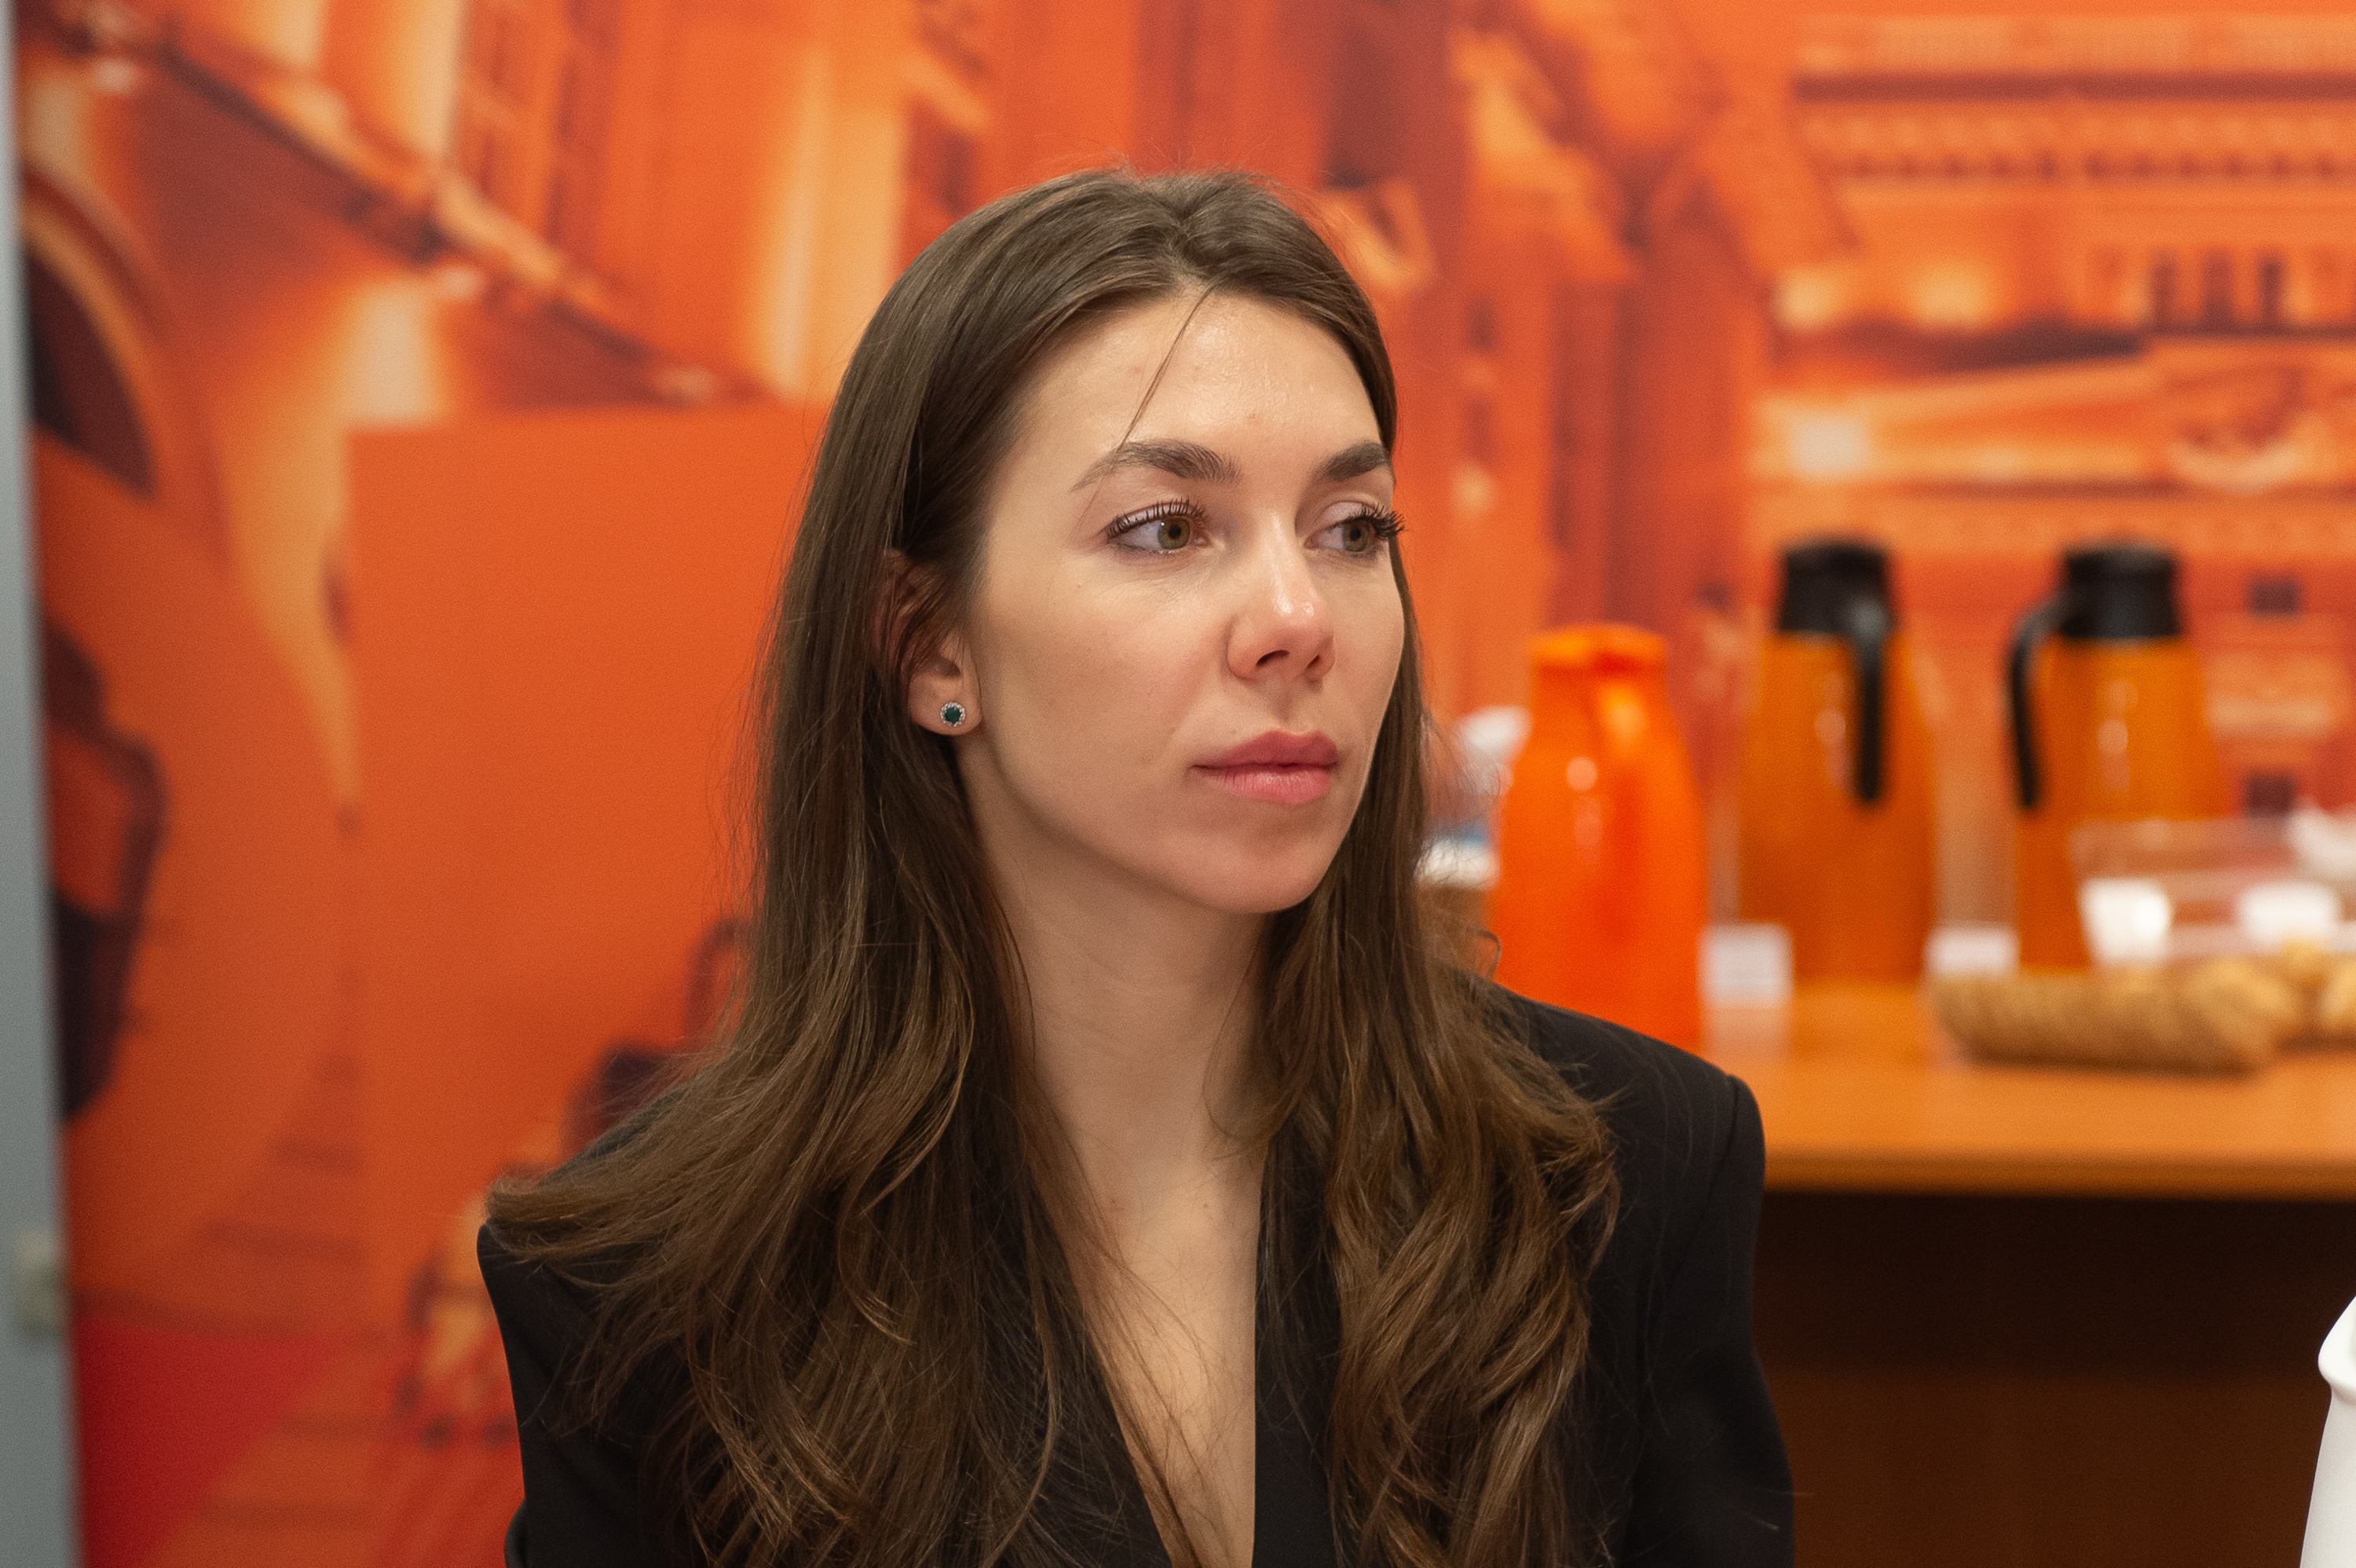 Екатерина Бороздина, директор Санкт-Петербургского представительства лизинговой компании Carcade